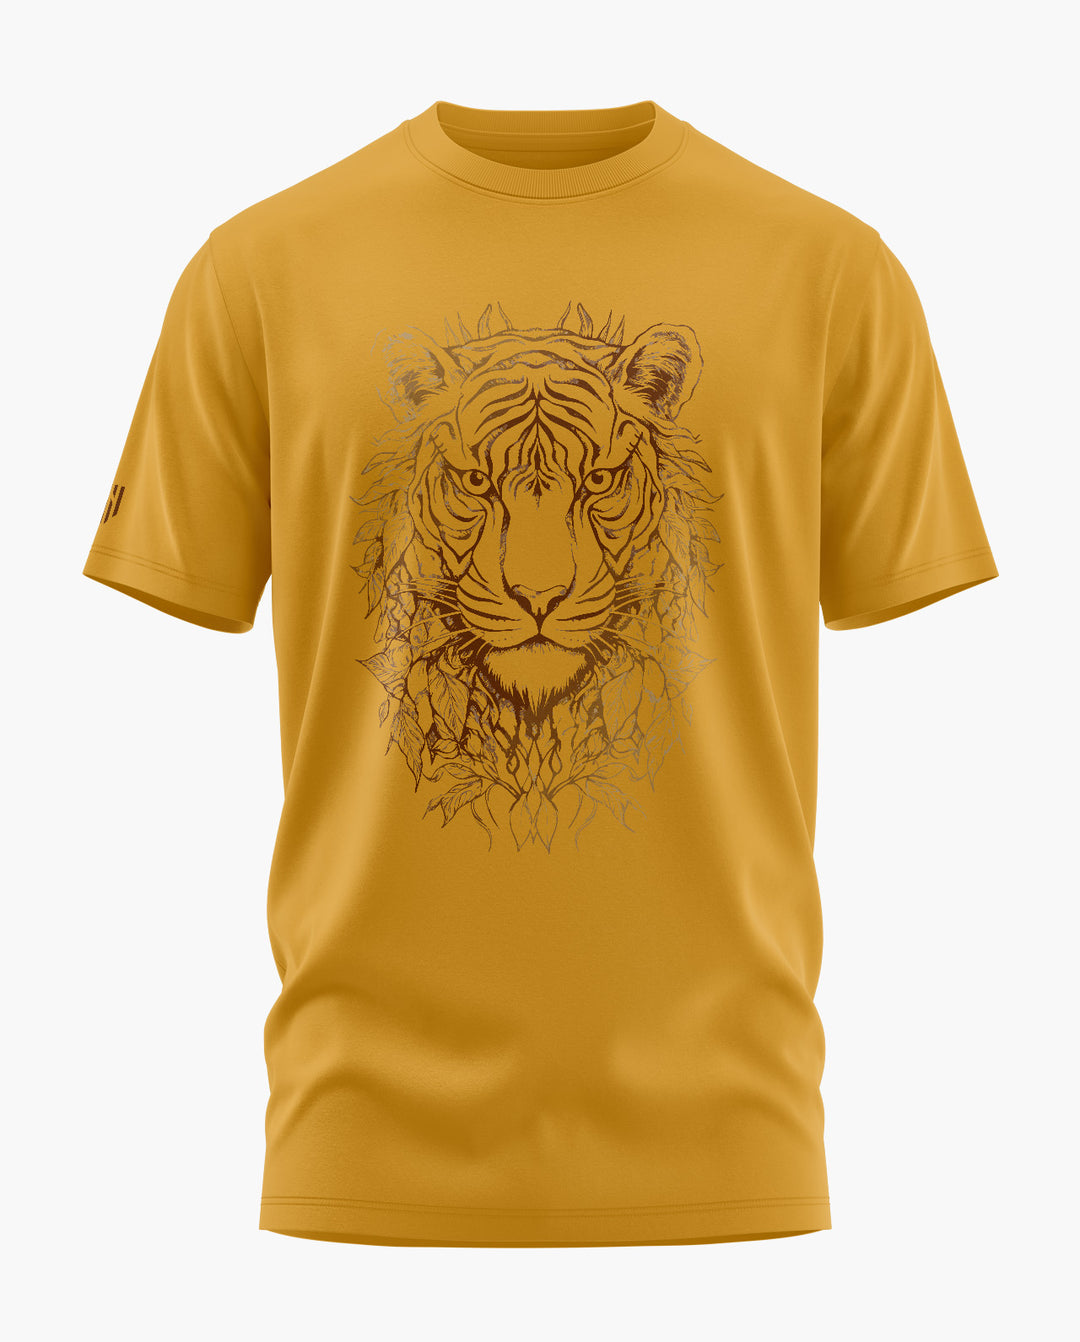 The Golden Tiger T-Shirt